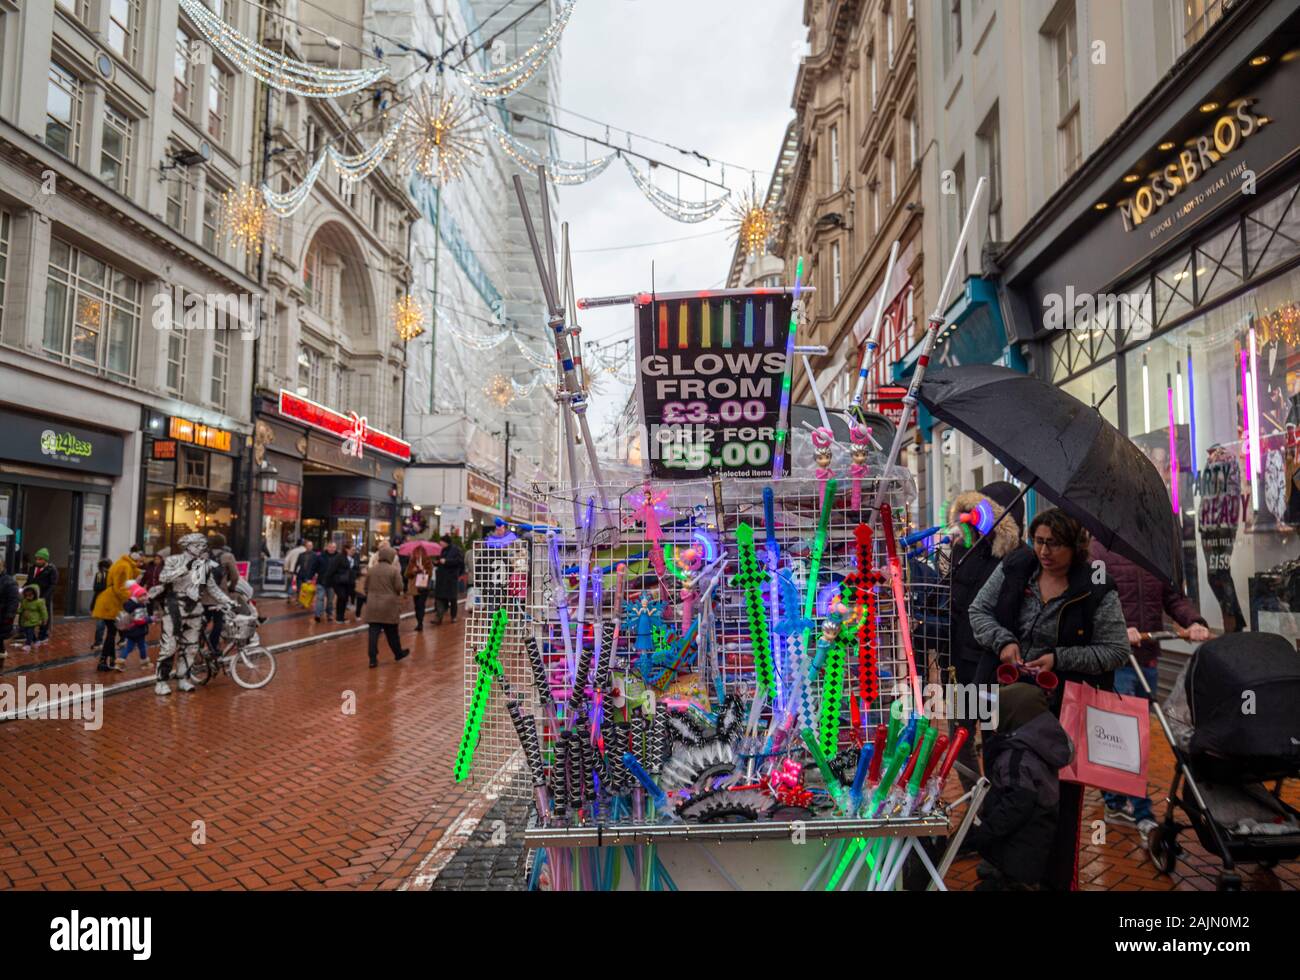 BIRMINGHAM, VEREINIGTES KÖNIGREICH - Dezember 15, 2019: Glow Spielzeug an der New Street stall während der jährlichen Weihnachten Frankfurt Markt Stockfoto